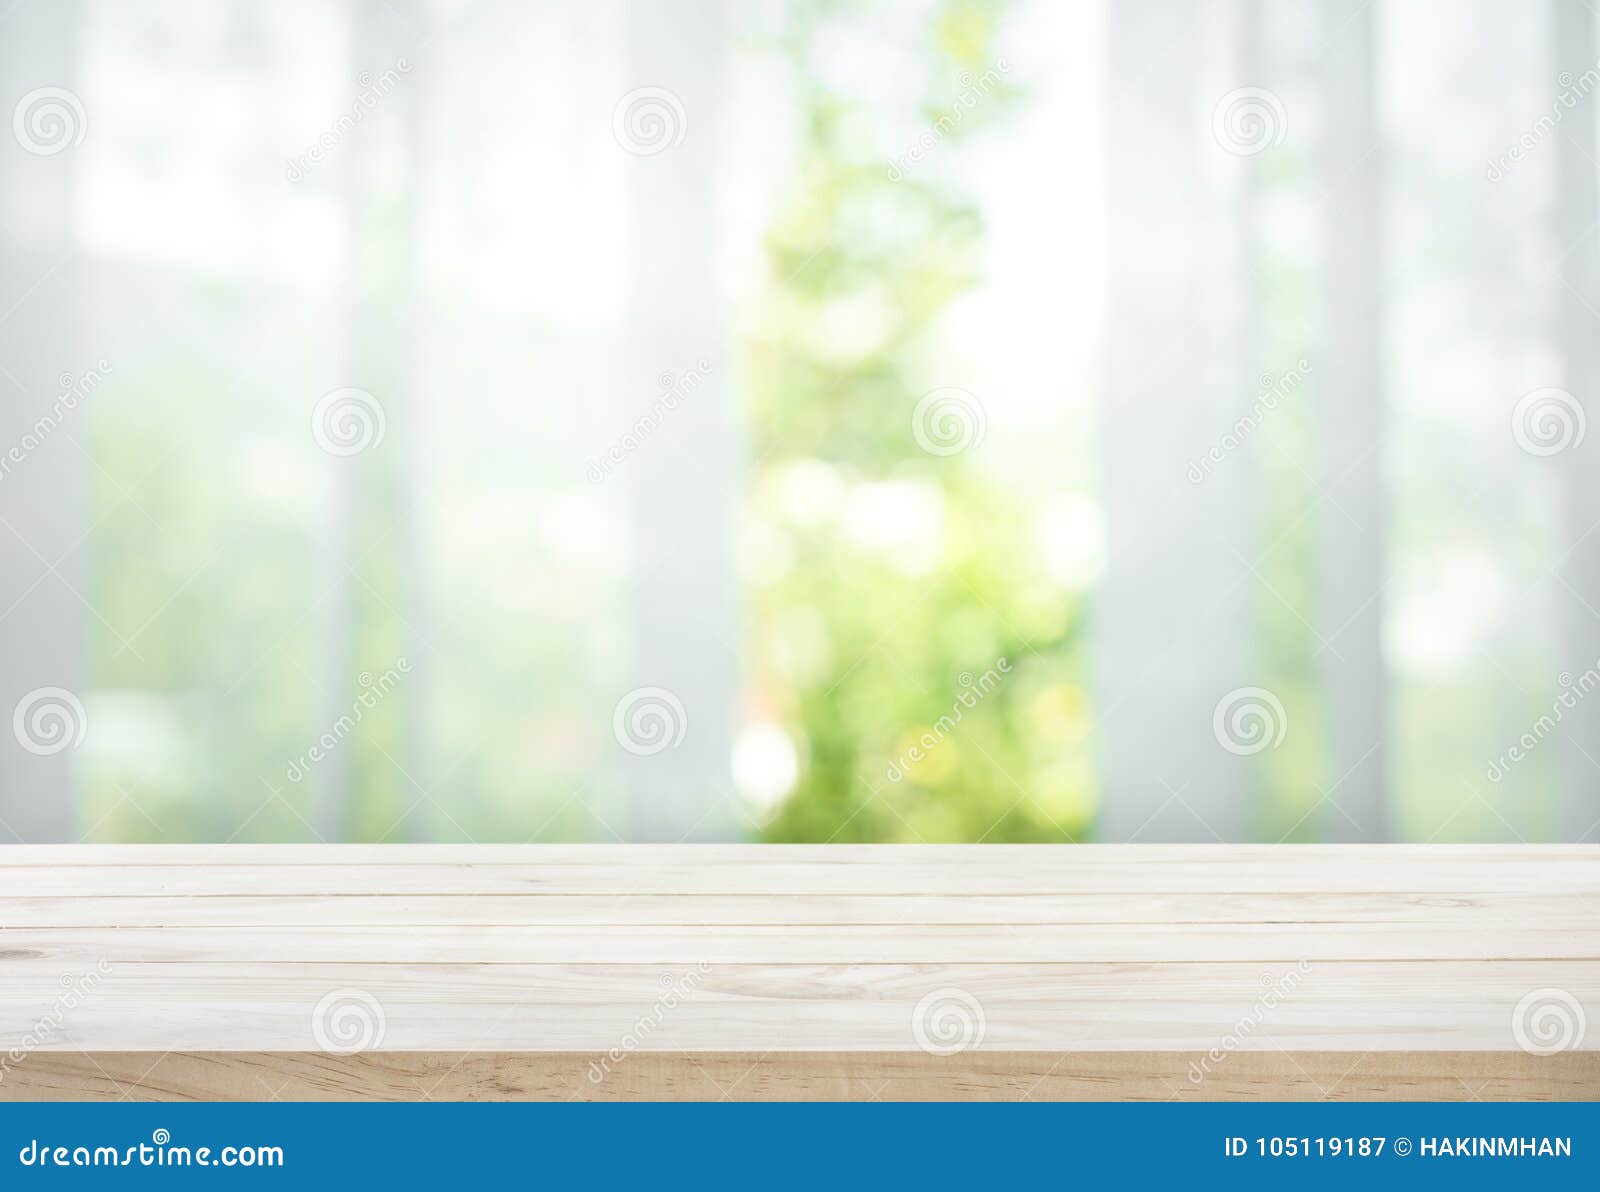 Leeren Sie sich von der hölzernen Tischplatte auf Unschärfe des Vorhangs mit Fensteransichtgrün vom Baumgarten